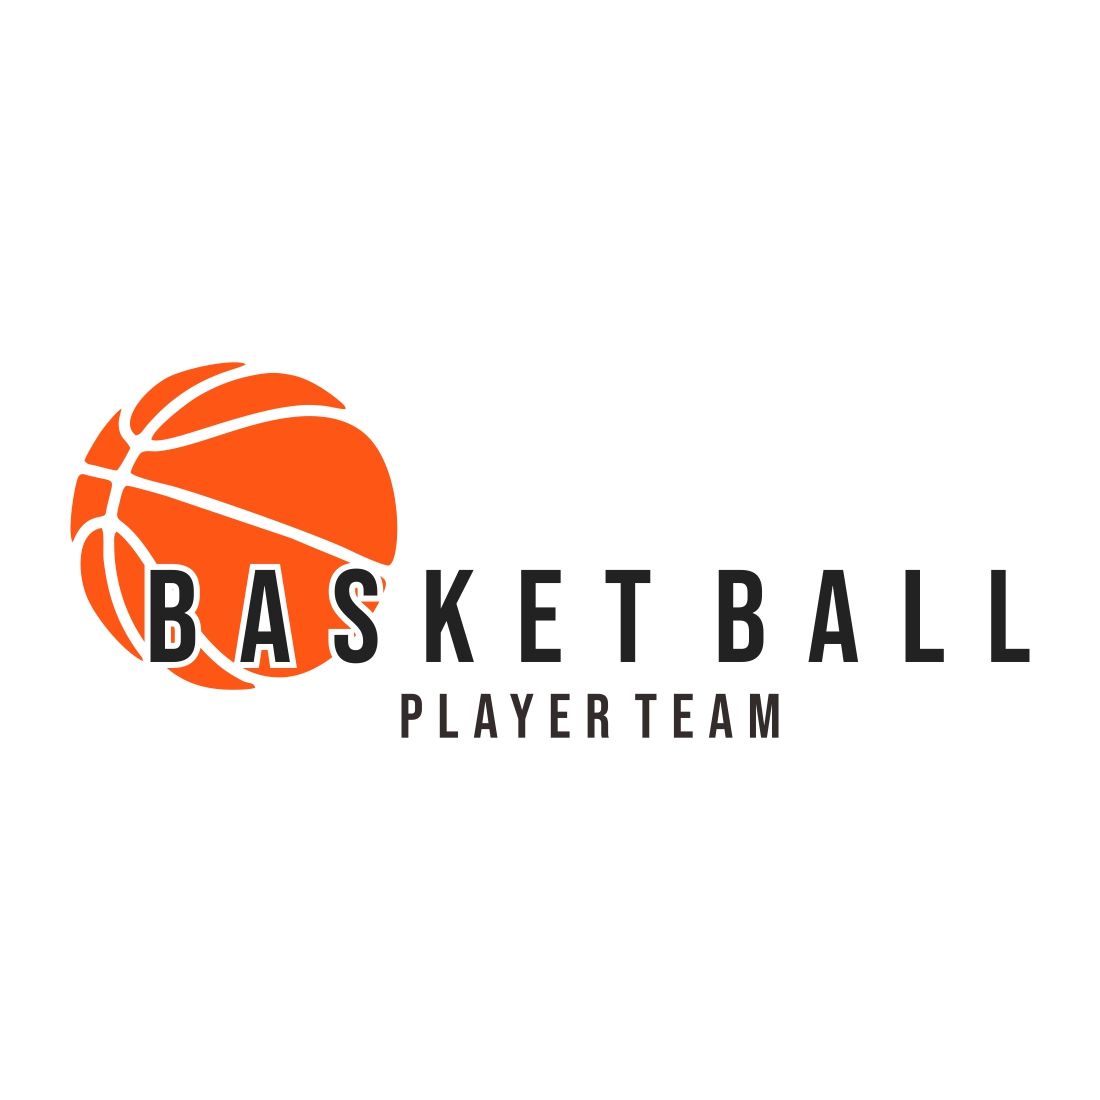 Basketball logo design template vector cover image.